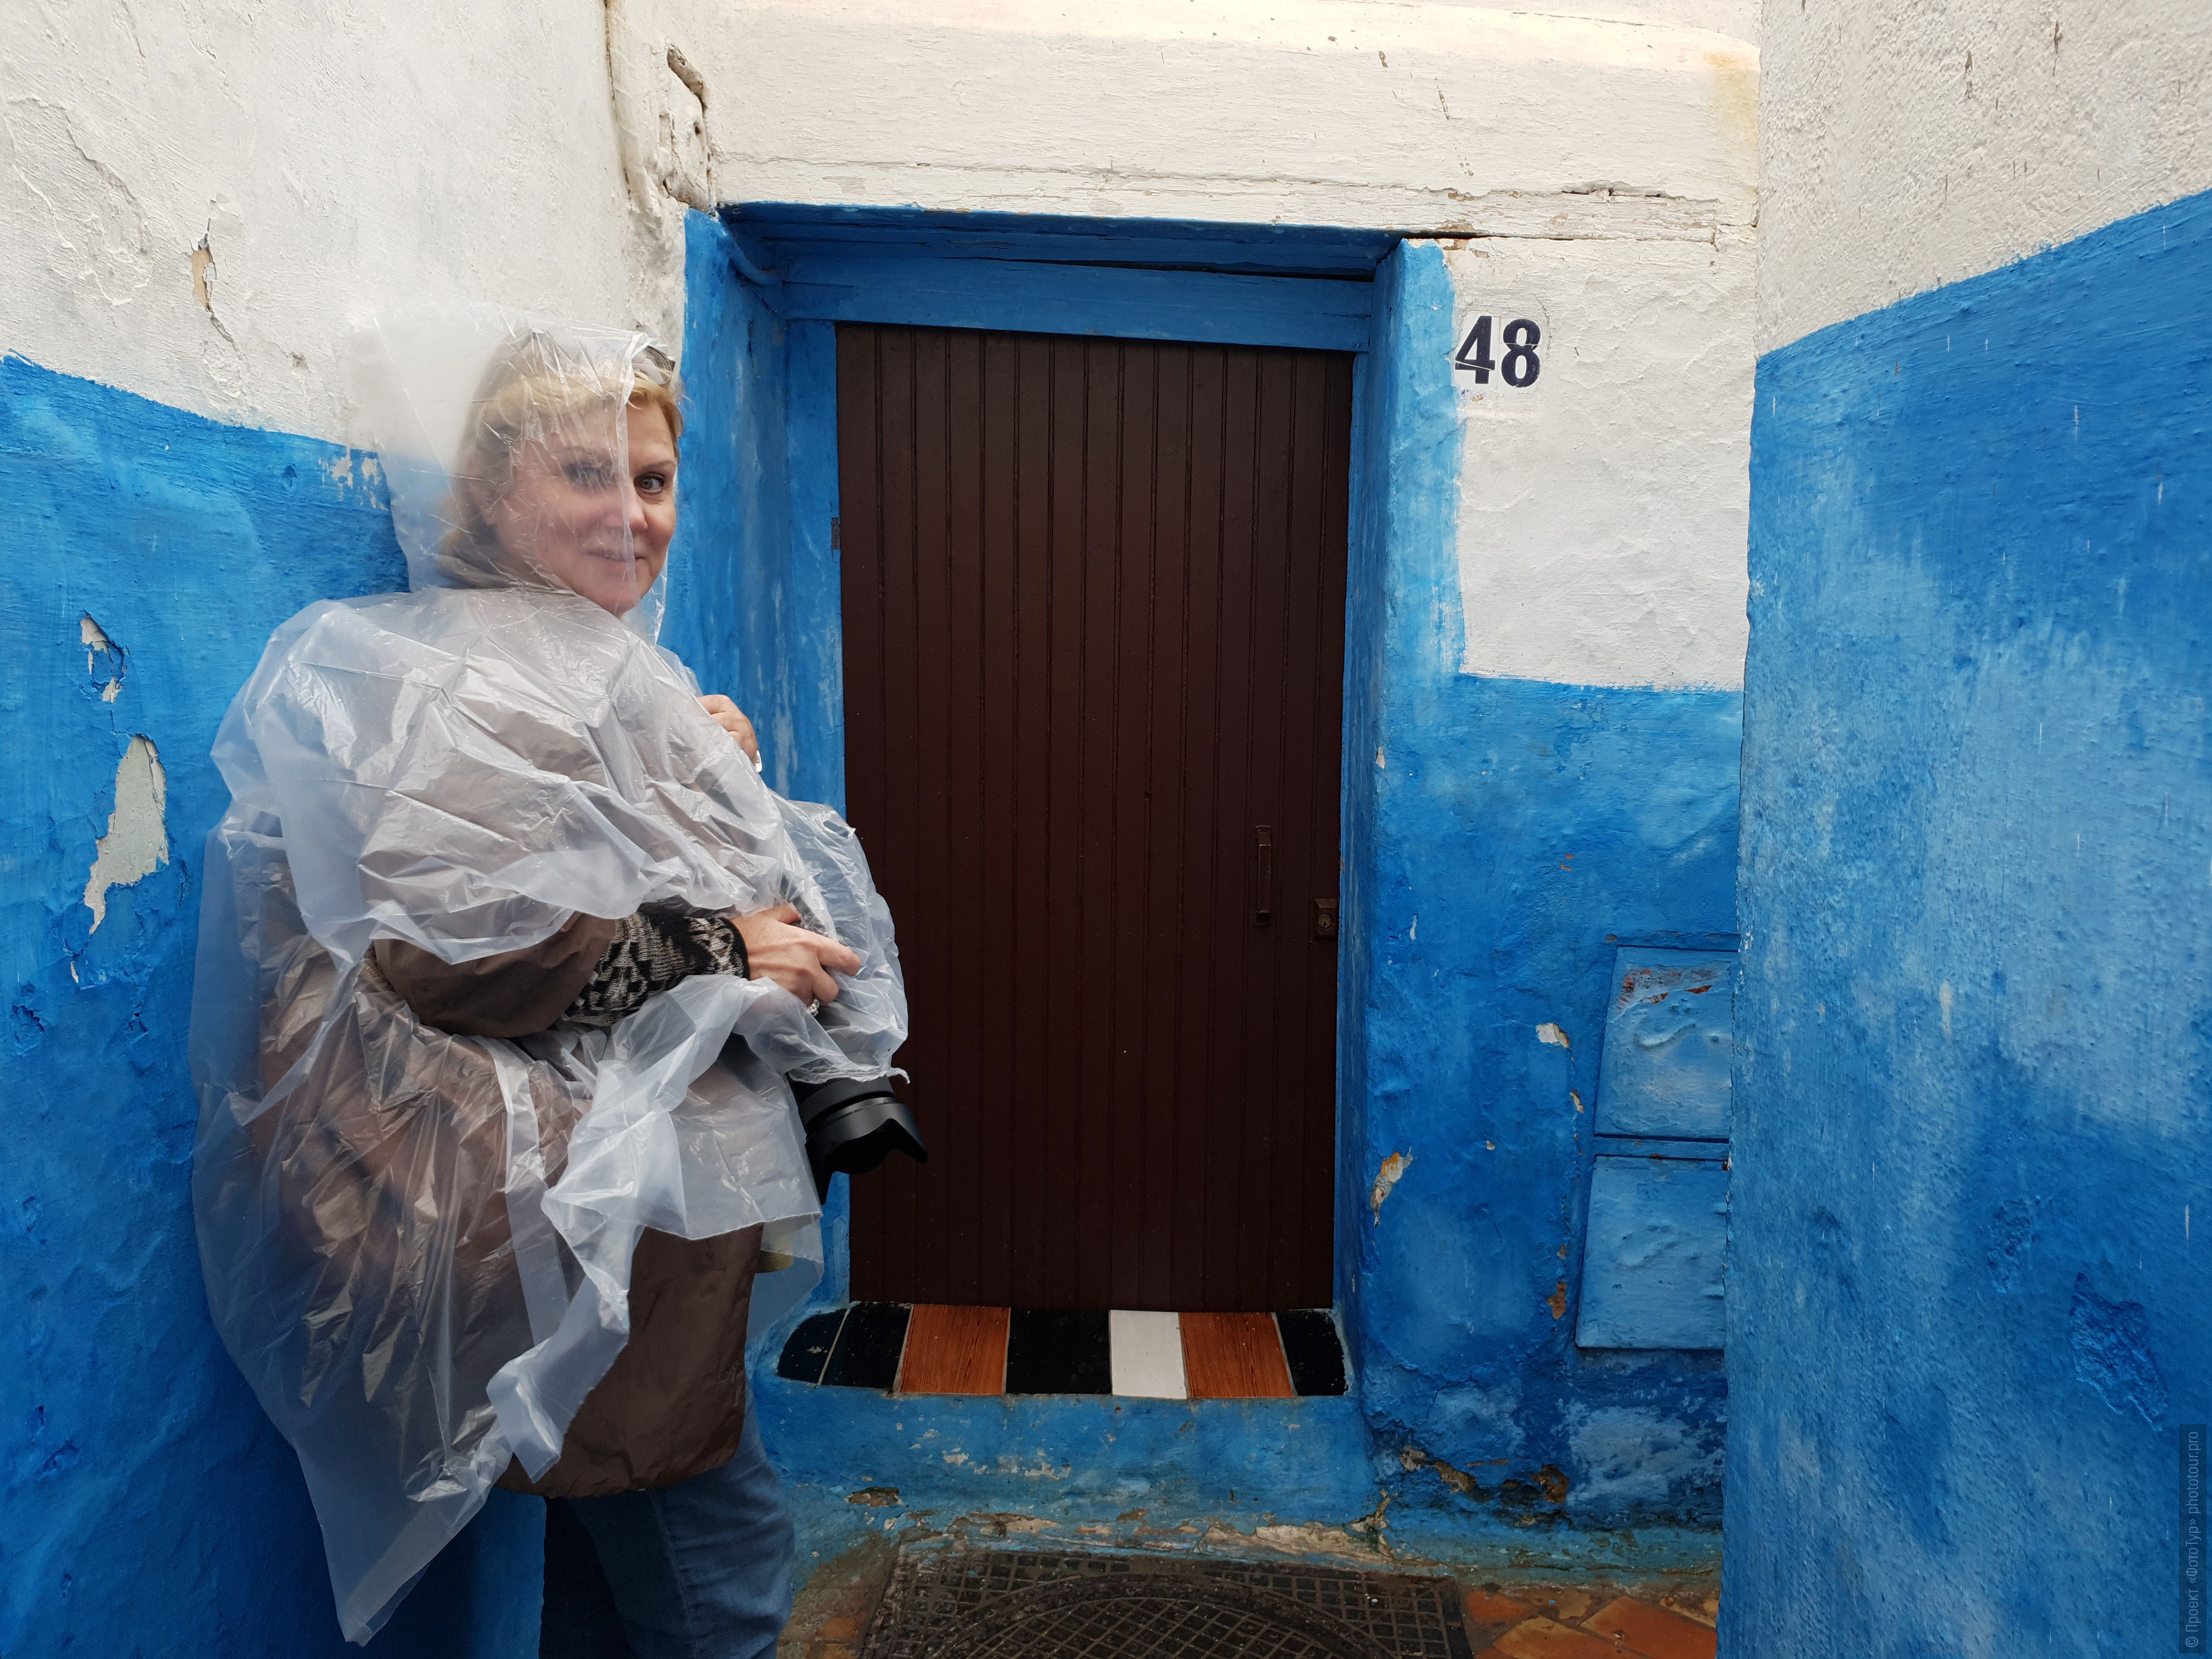 Дождь в Шефшауэне. Фототур по Марокко, октябрь 2018 года.